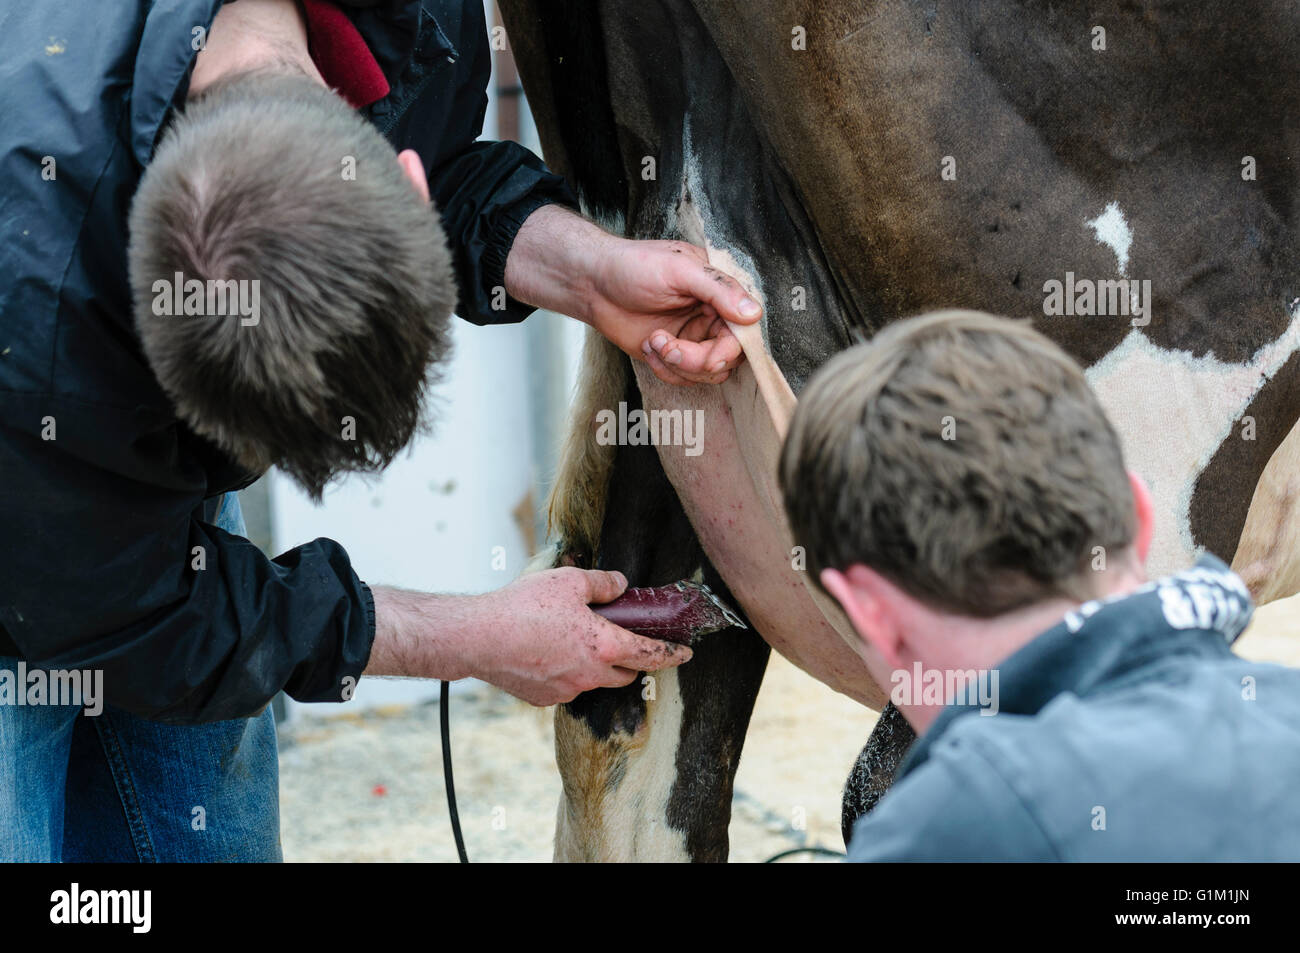 Zwei Bauern rasieren das Euter einer Kuh mit einen elektrischen Rasierer in Vorbereitung für einen Wettbewerb zeigen. Stockfoto